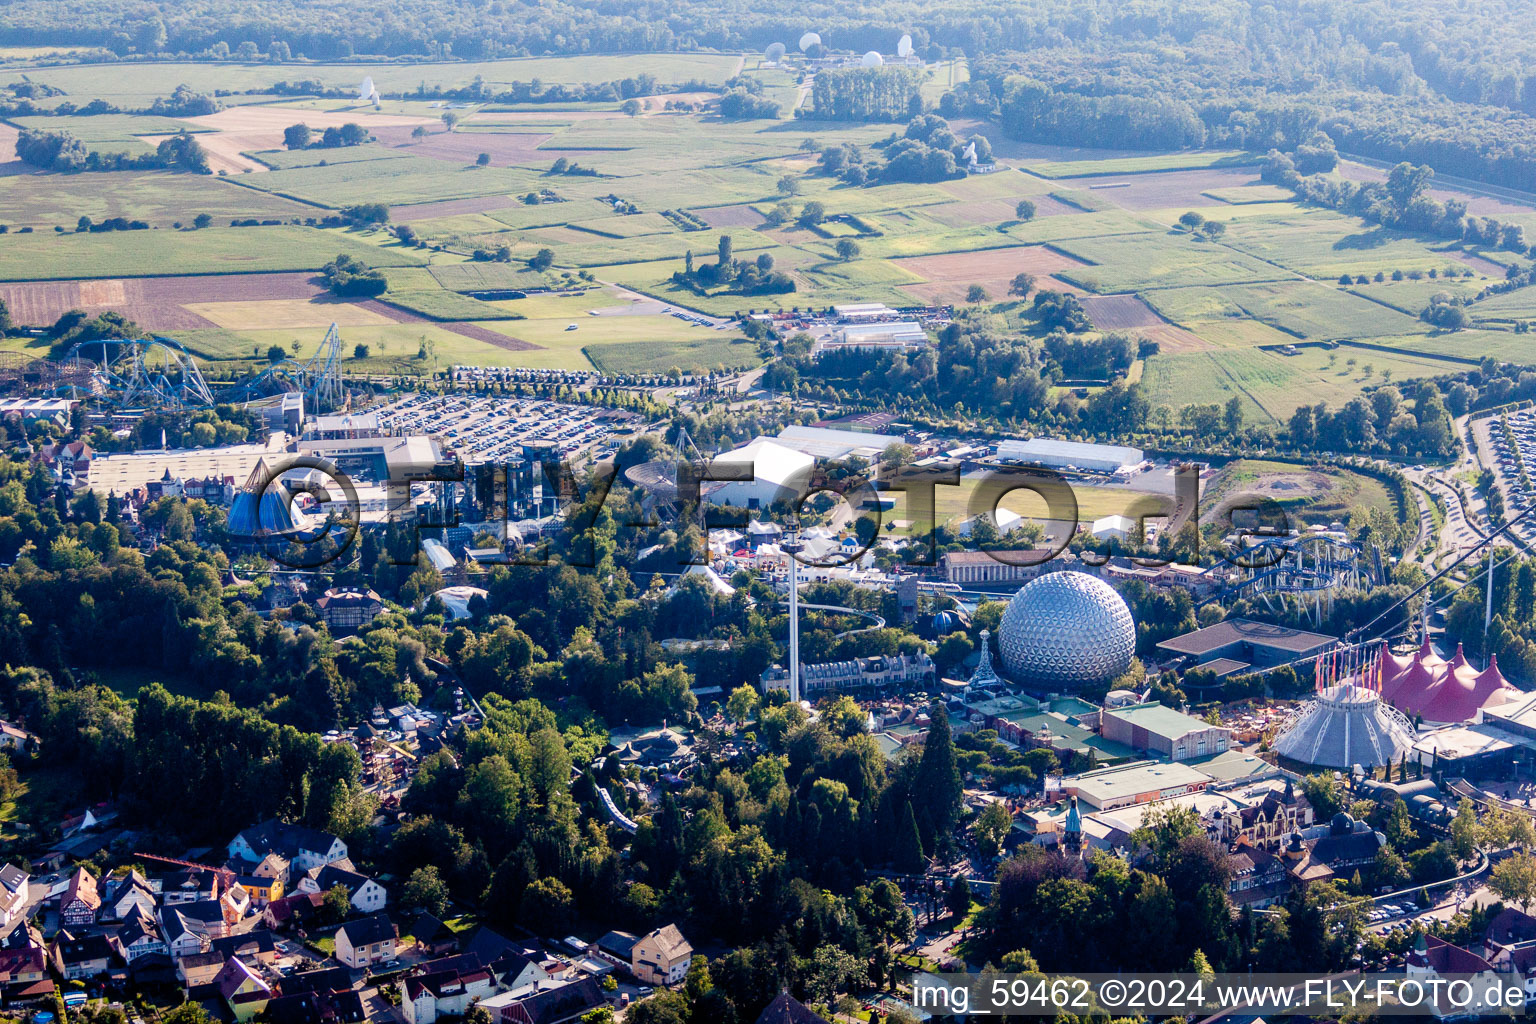 Luftbild von Freizeitzentrum - Vergnügungspark Europa-Park in Rust im Bundesland Baden-Württemberg, Deutschland